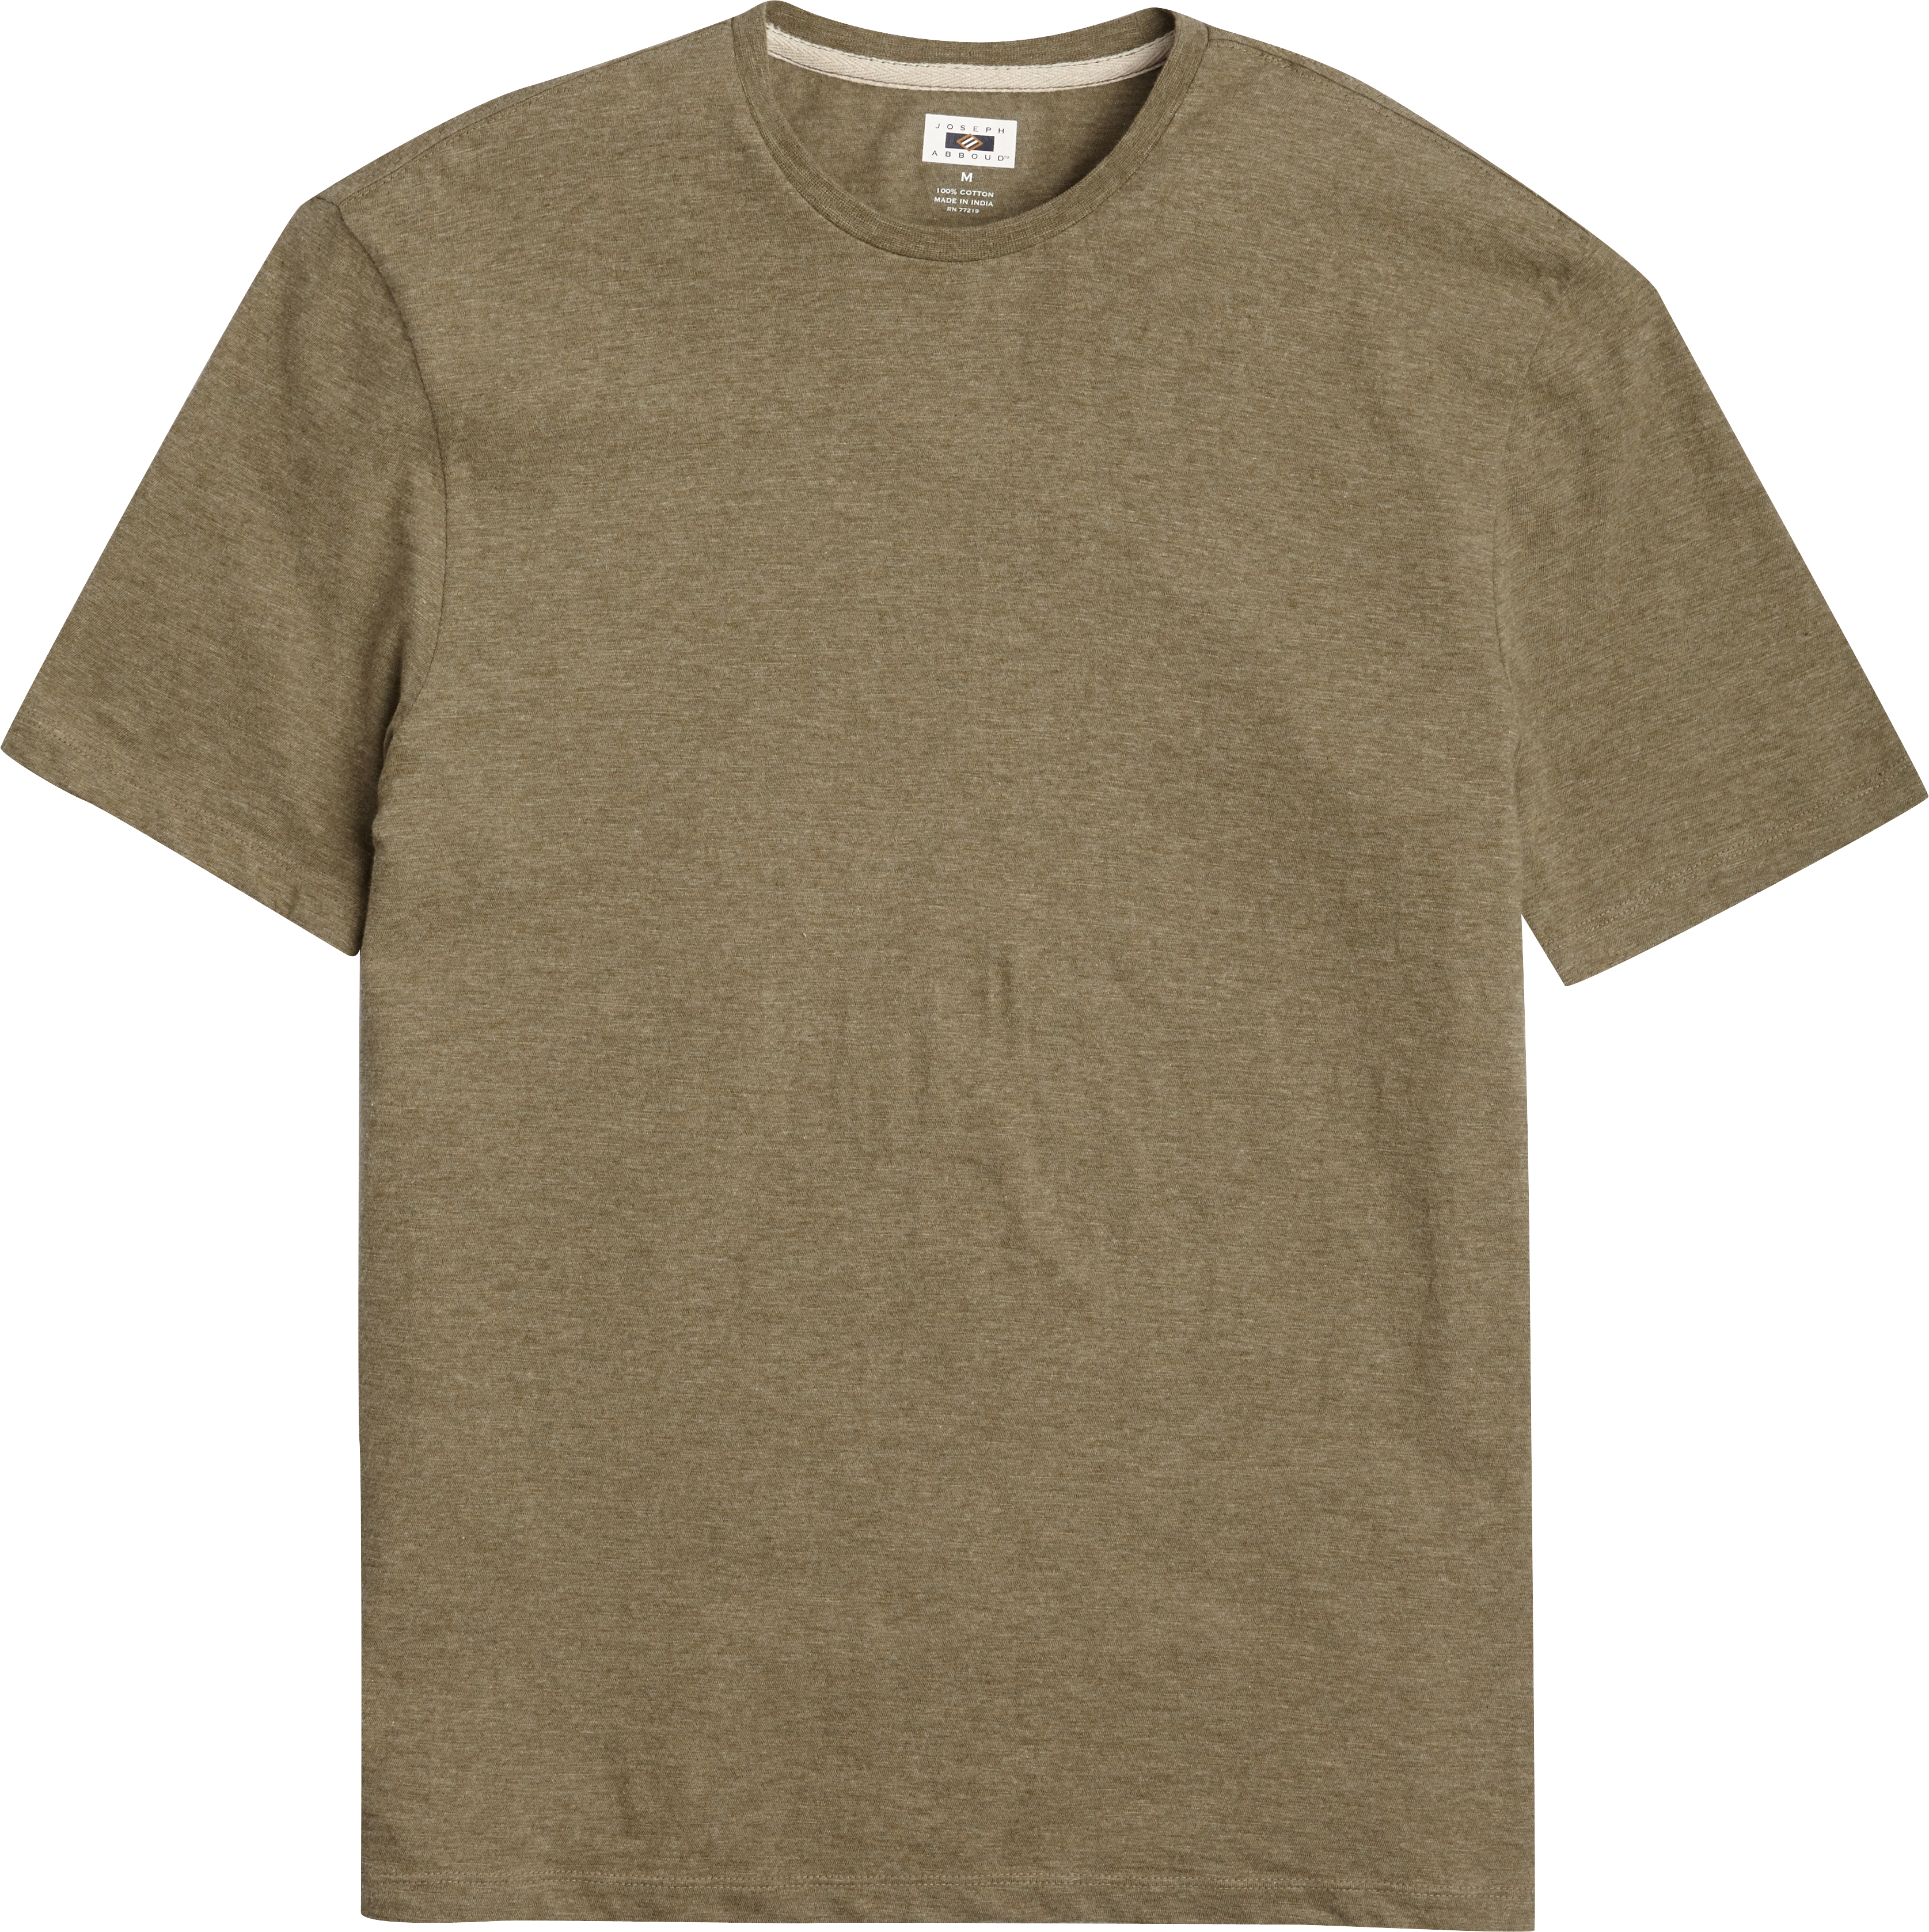 Joseph Abboud Olive Modern Fit Crewneck Tee Shirt - Men's Sale | Men's ...